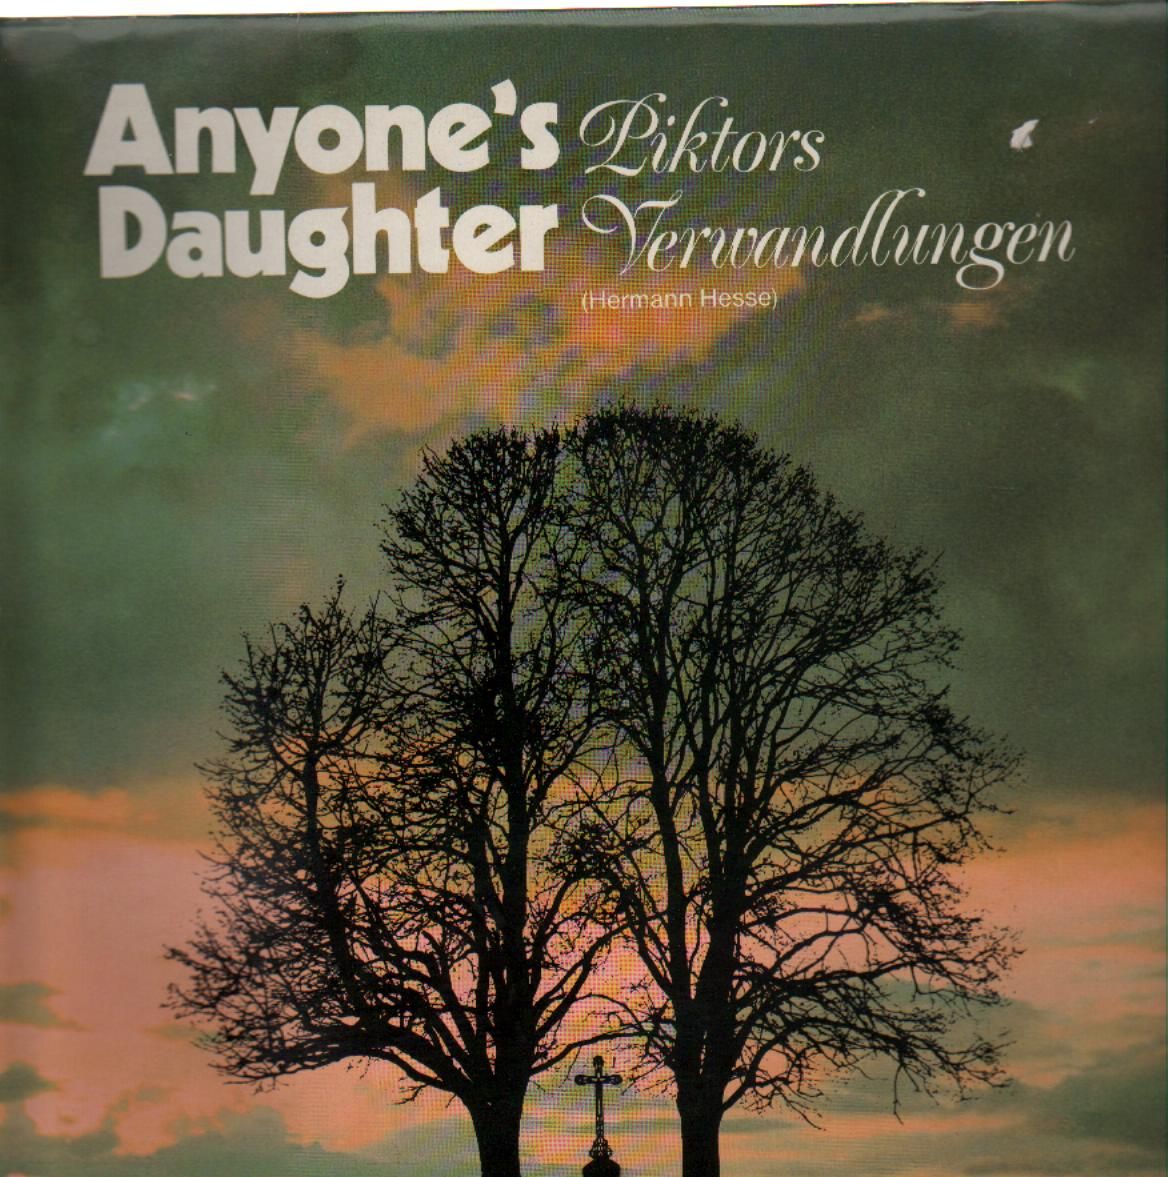 Caratula para cd de Anyone’s Daughter  - Piktorõs Verwandlungen (Hermann Hesse)